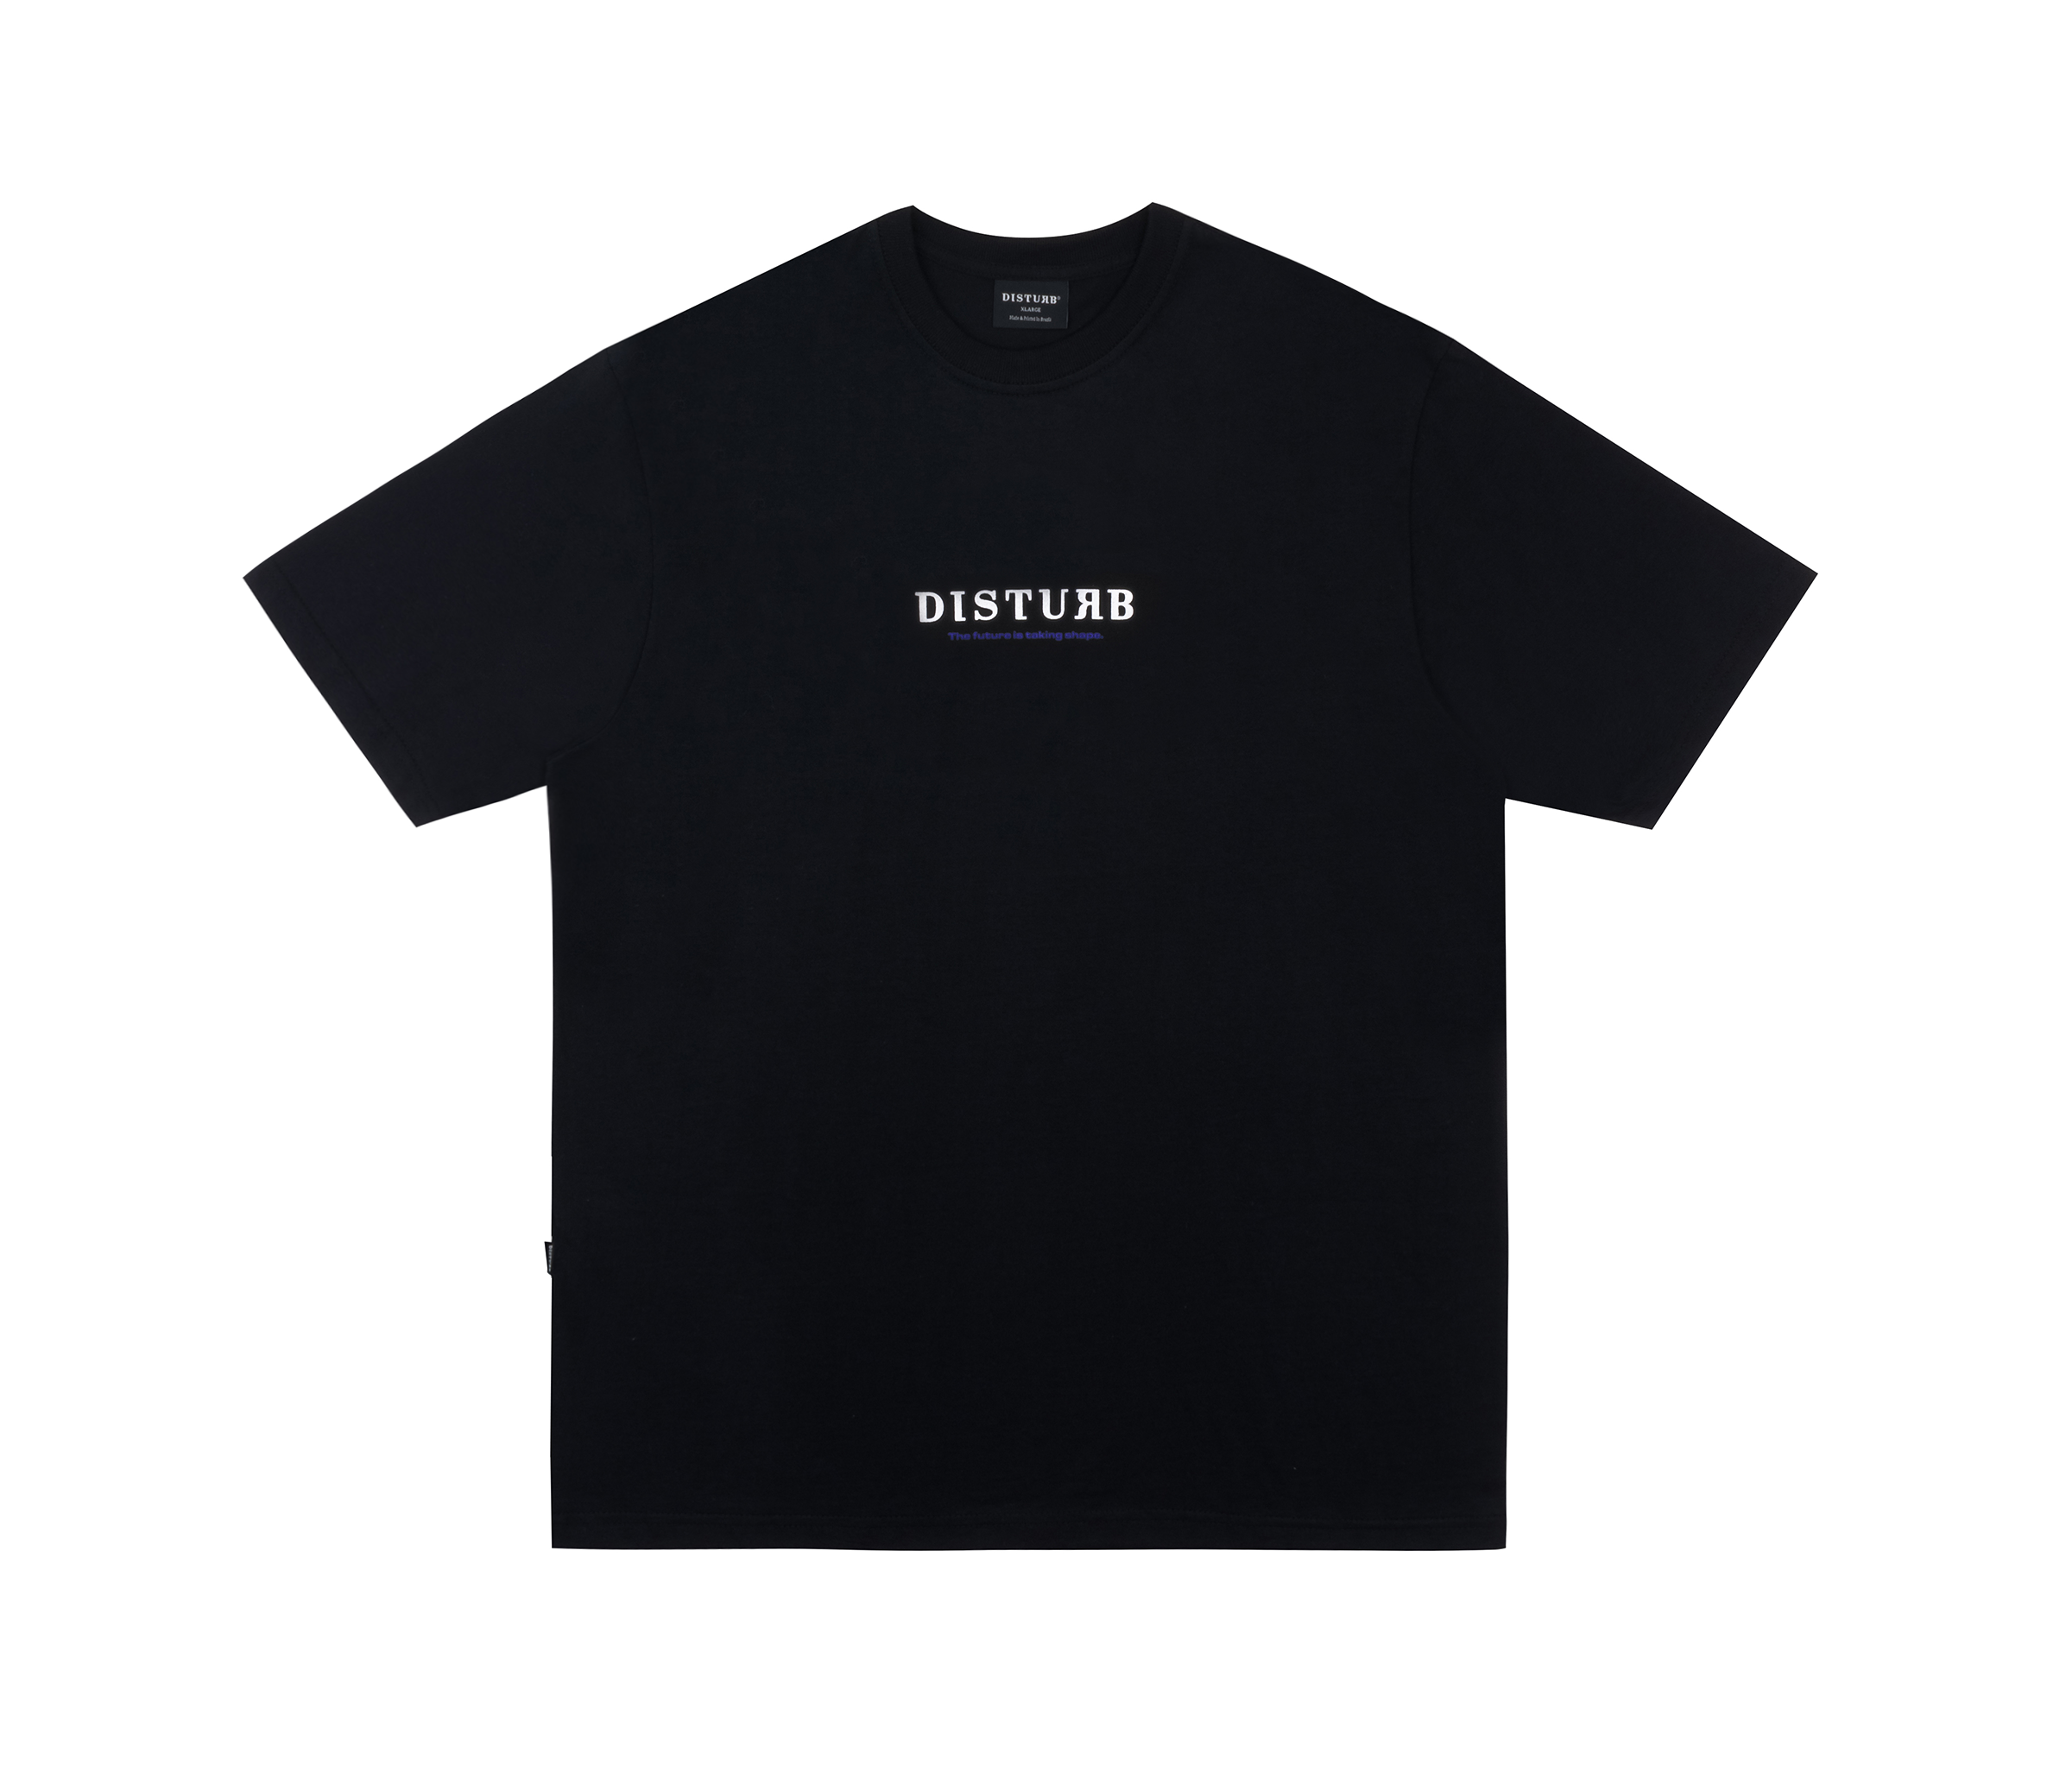 DISTURB - Camiseta Future Logo In Black